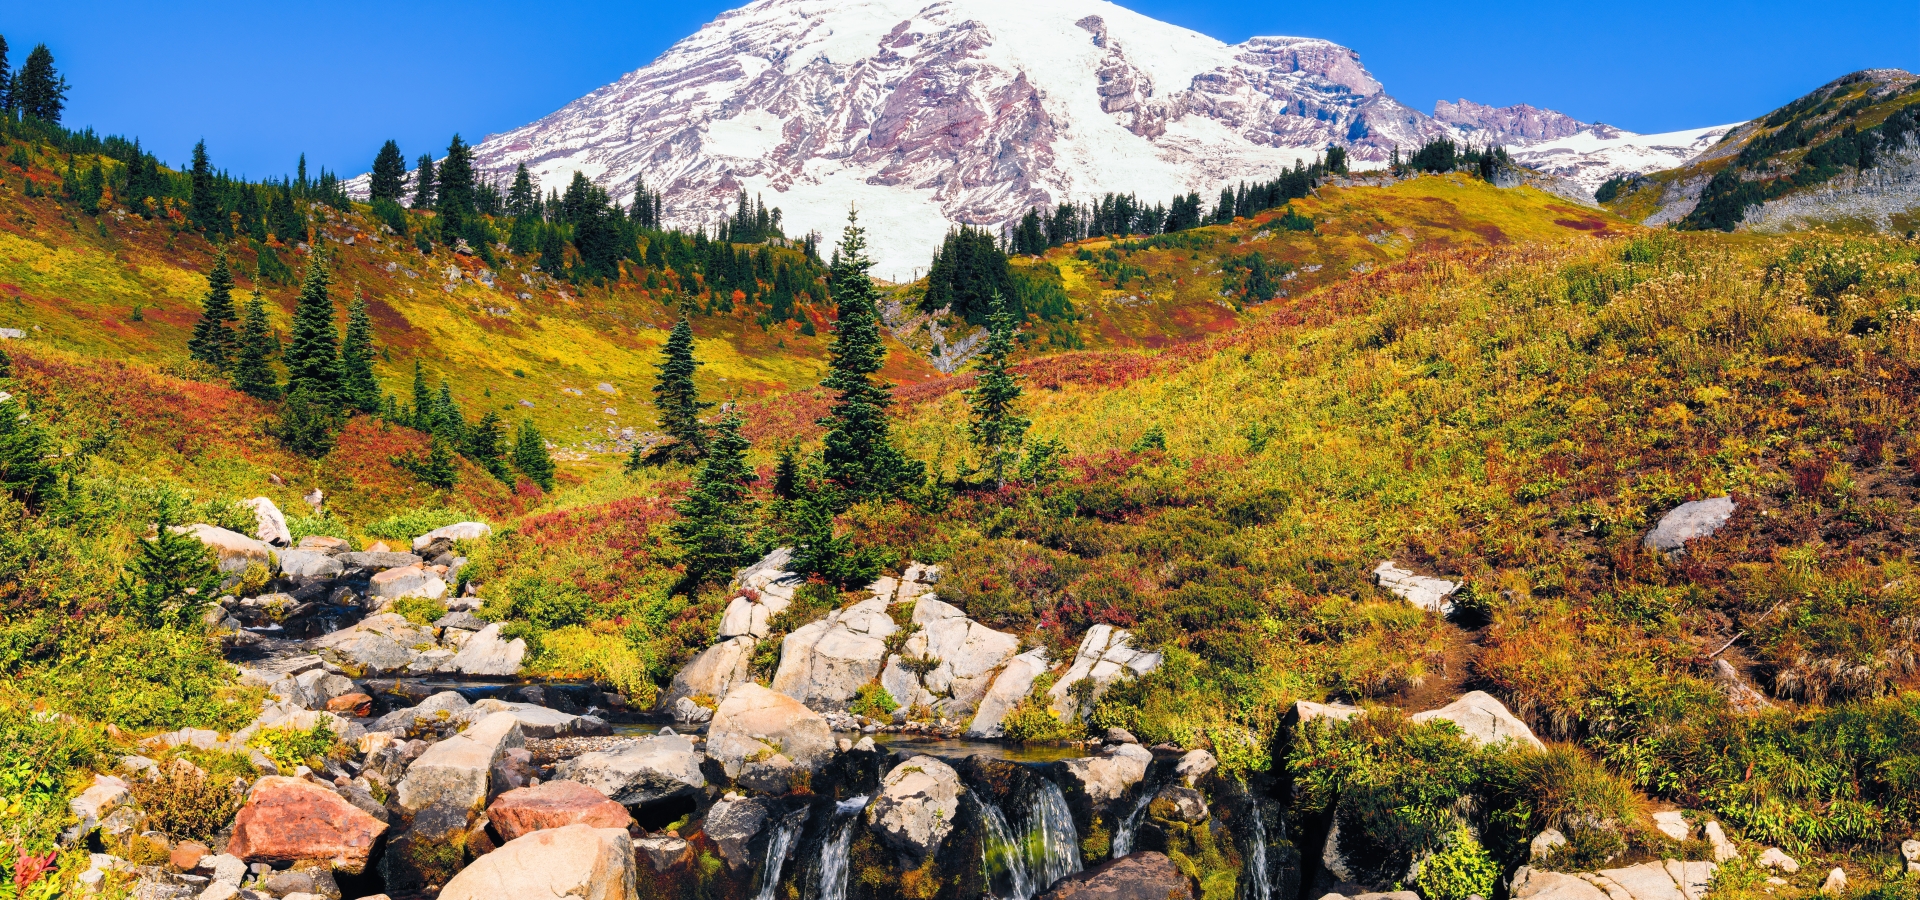 Mount Rainier autumn.jpg